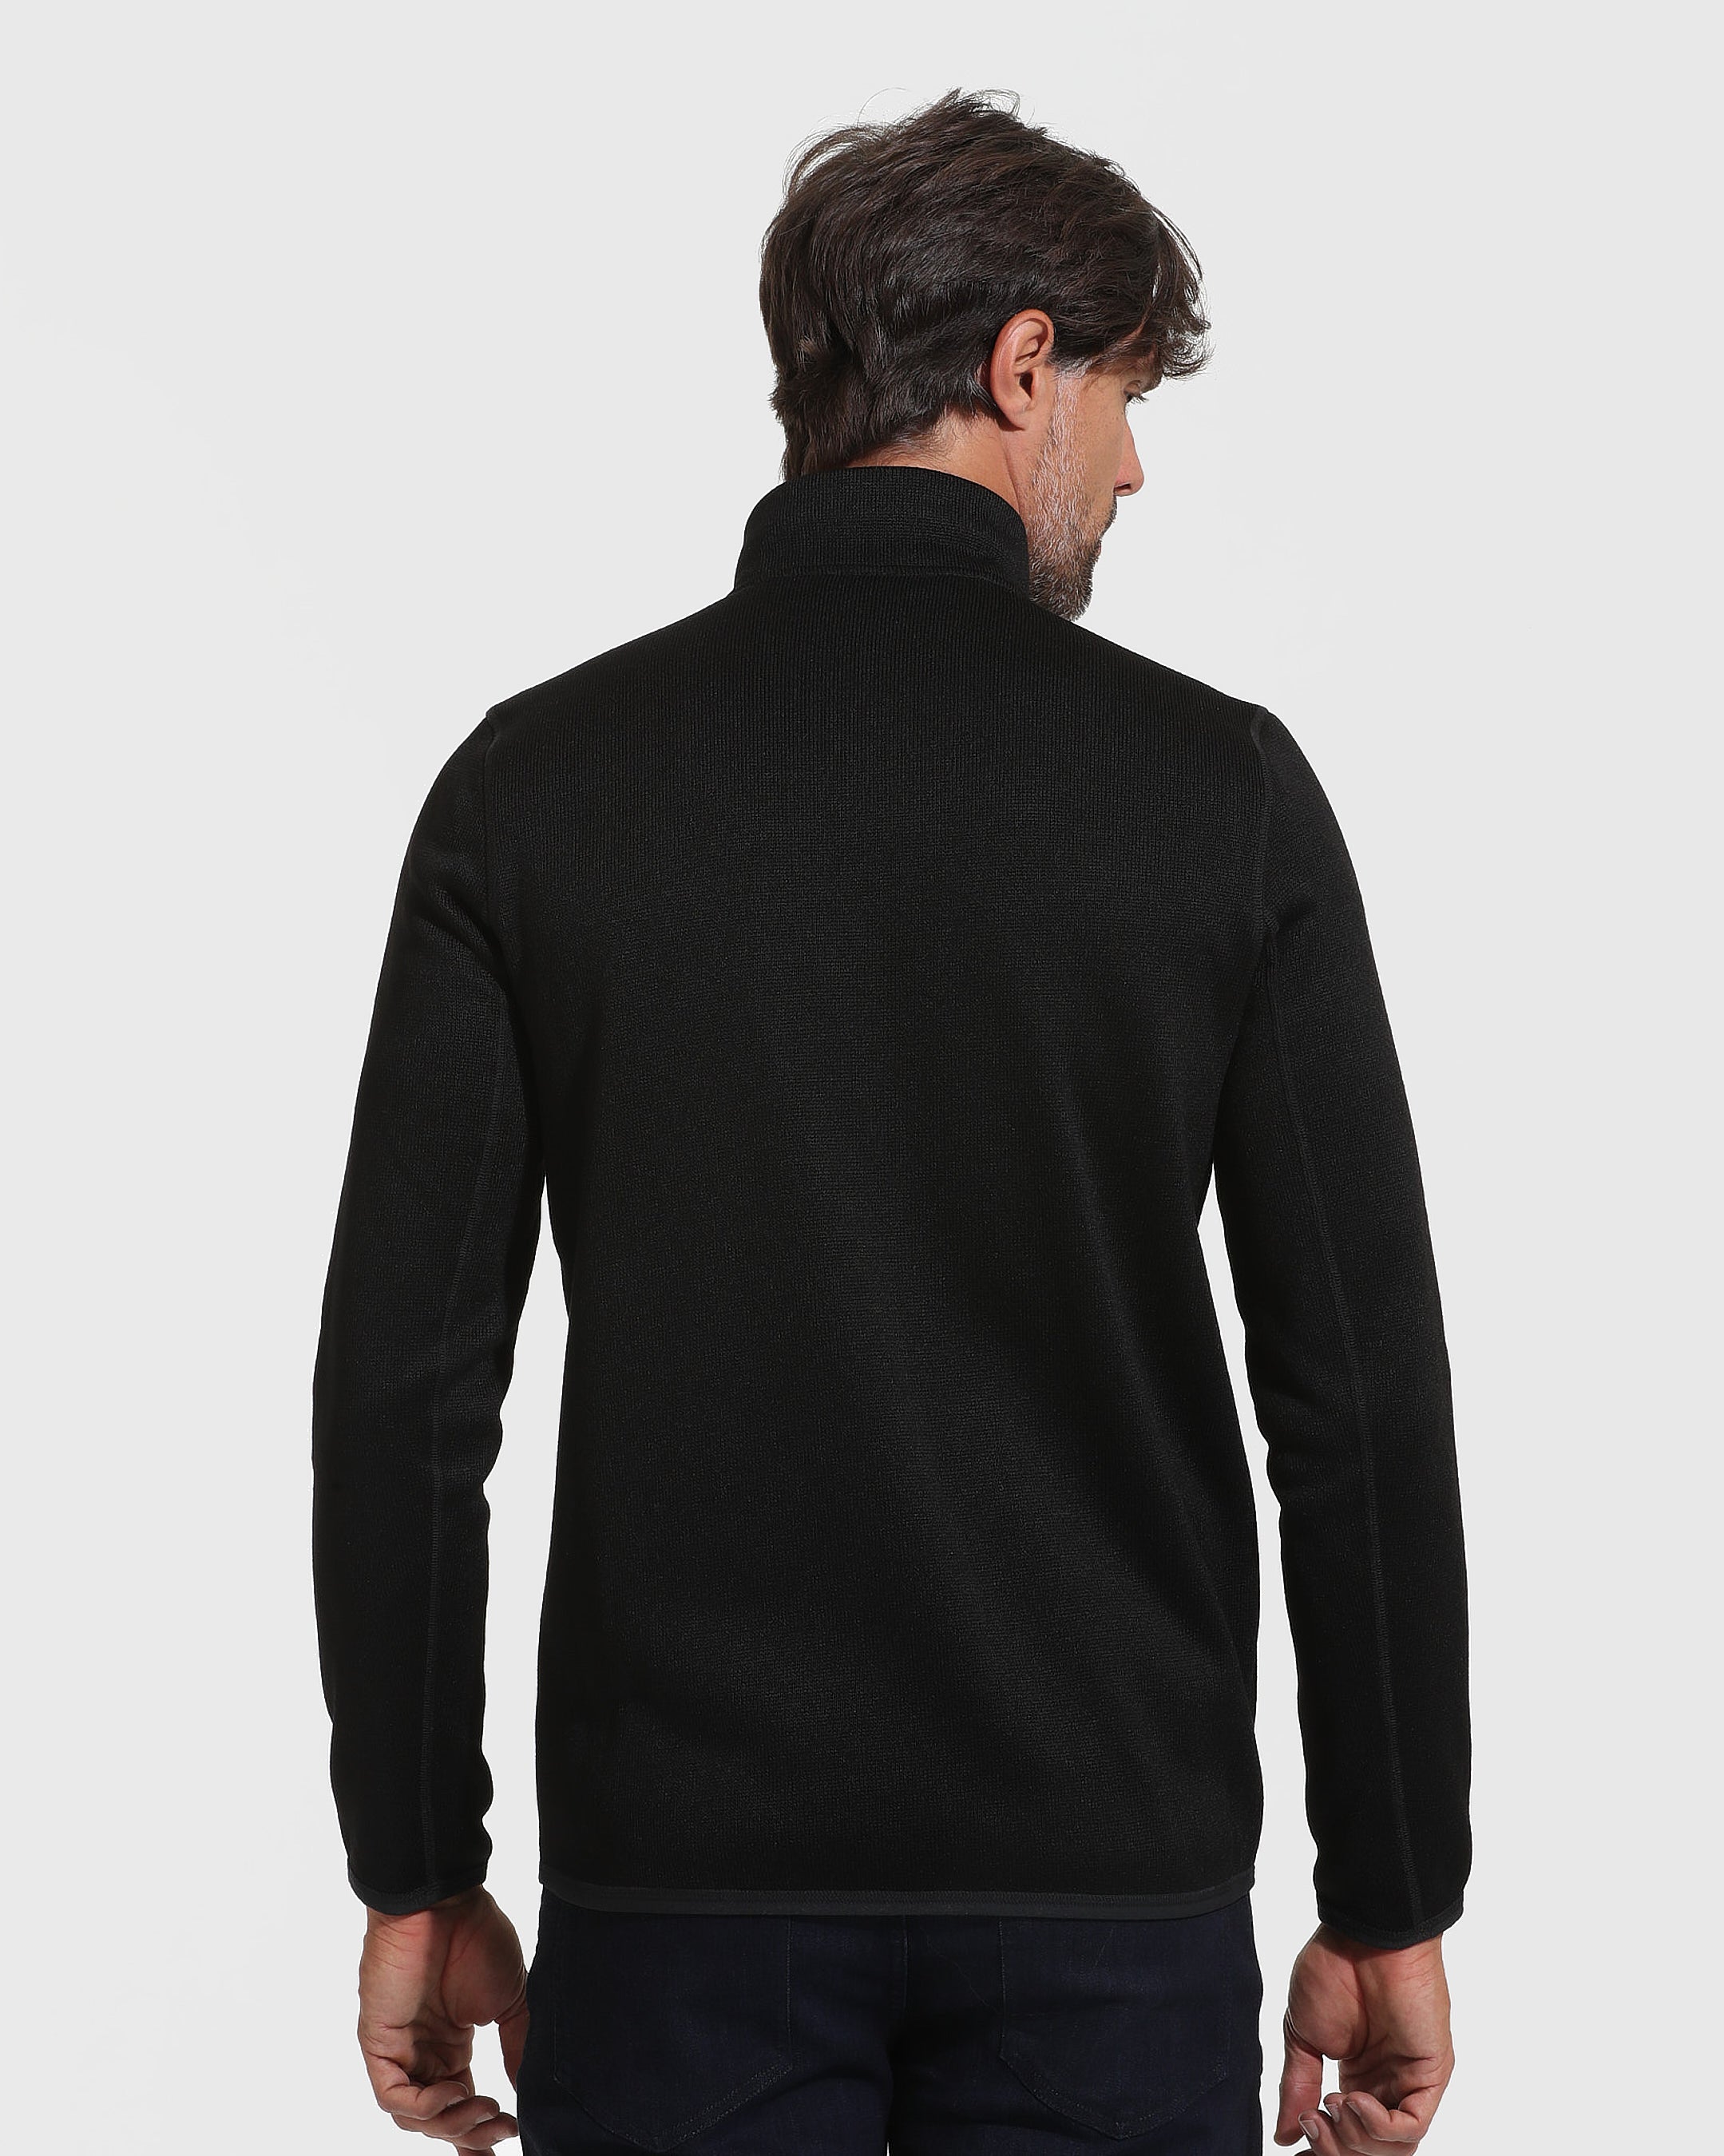 Black Sweater Fleece Jacket | Black Sweater Fleece Jacket | True Classic